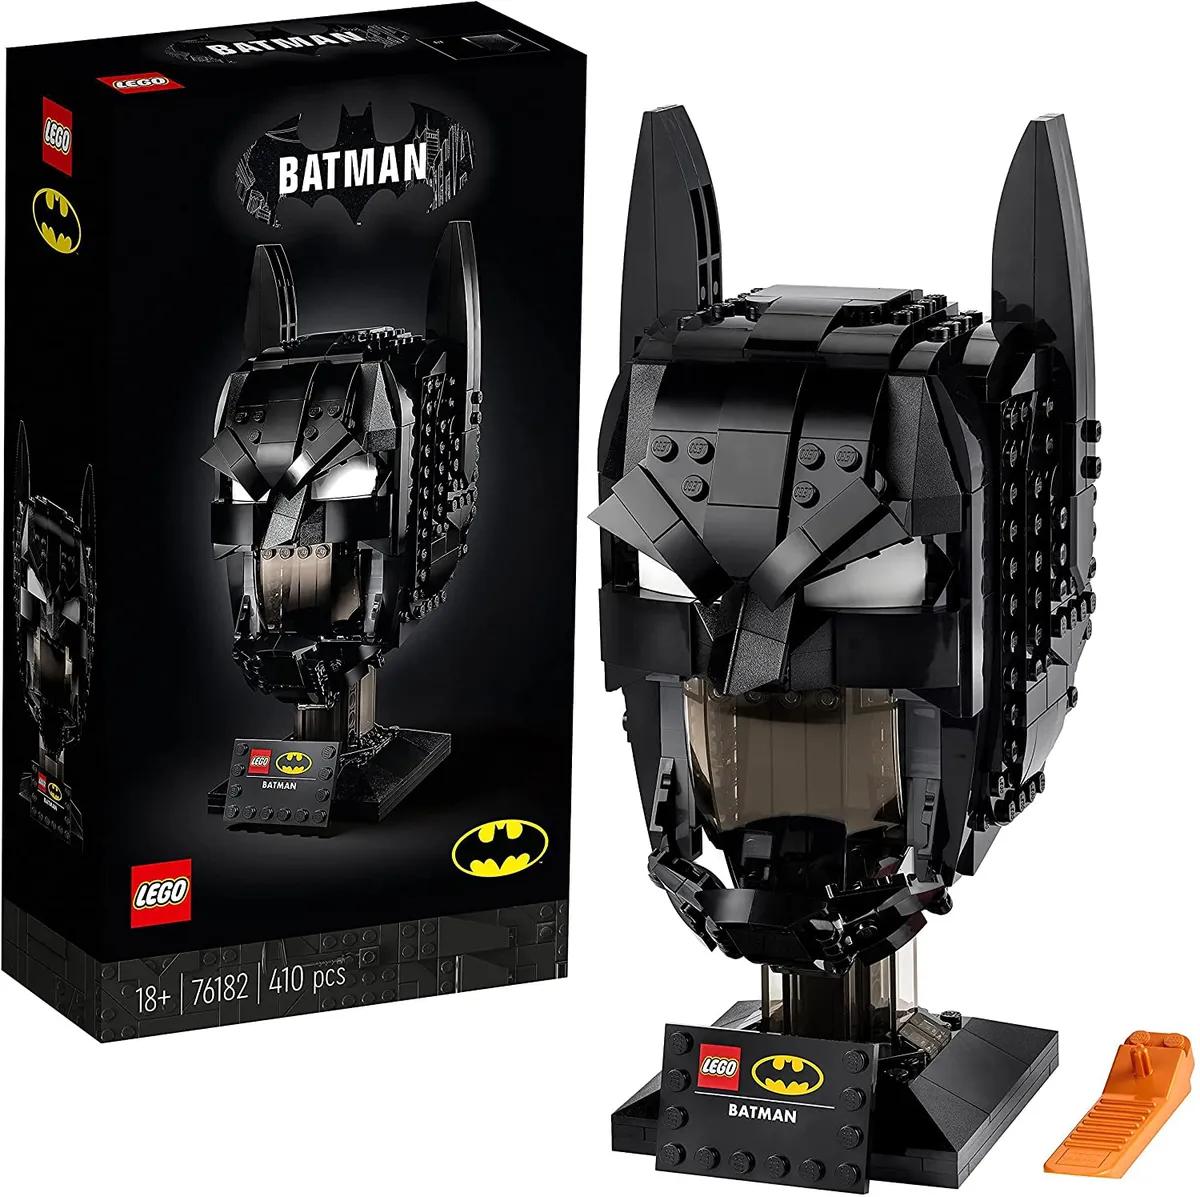 Lego Batman kit